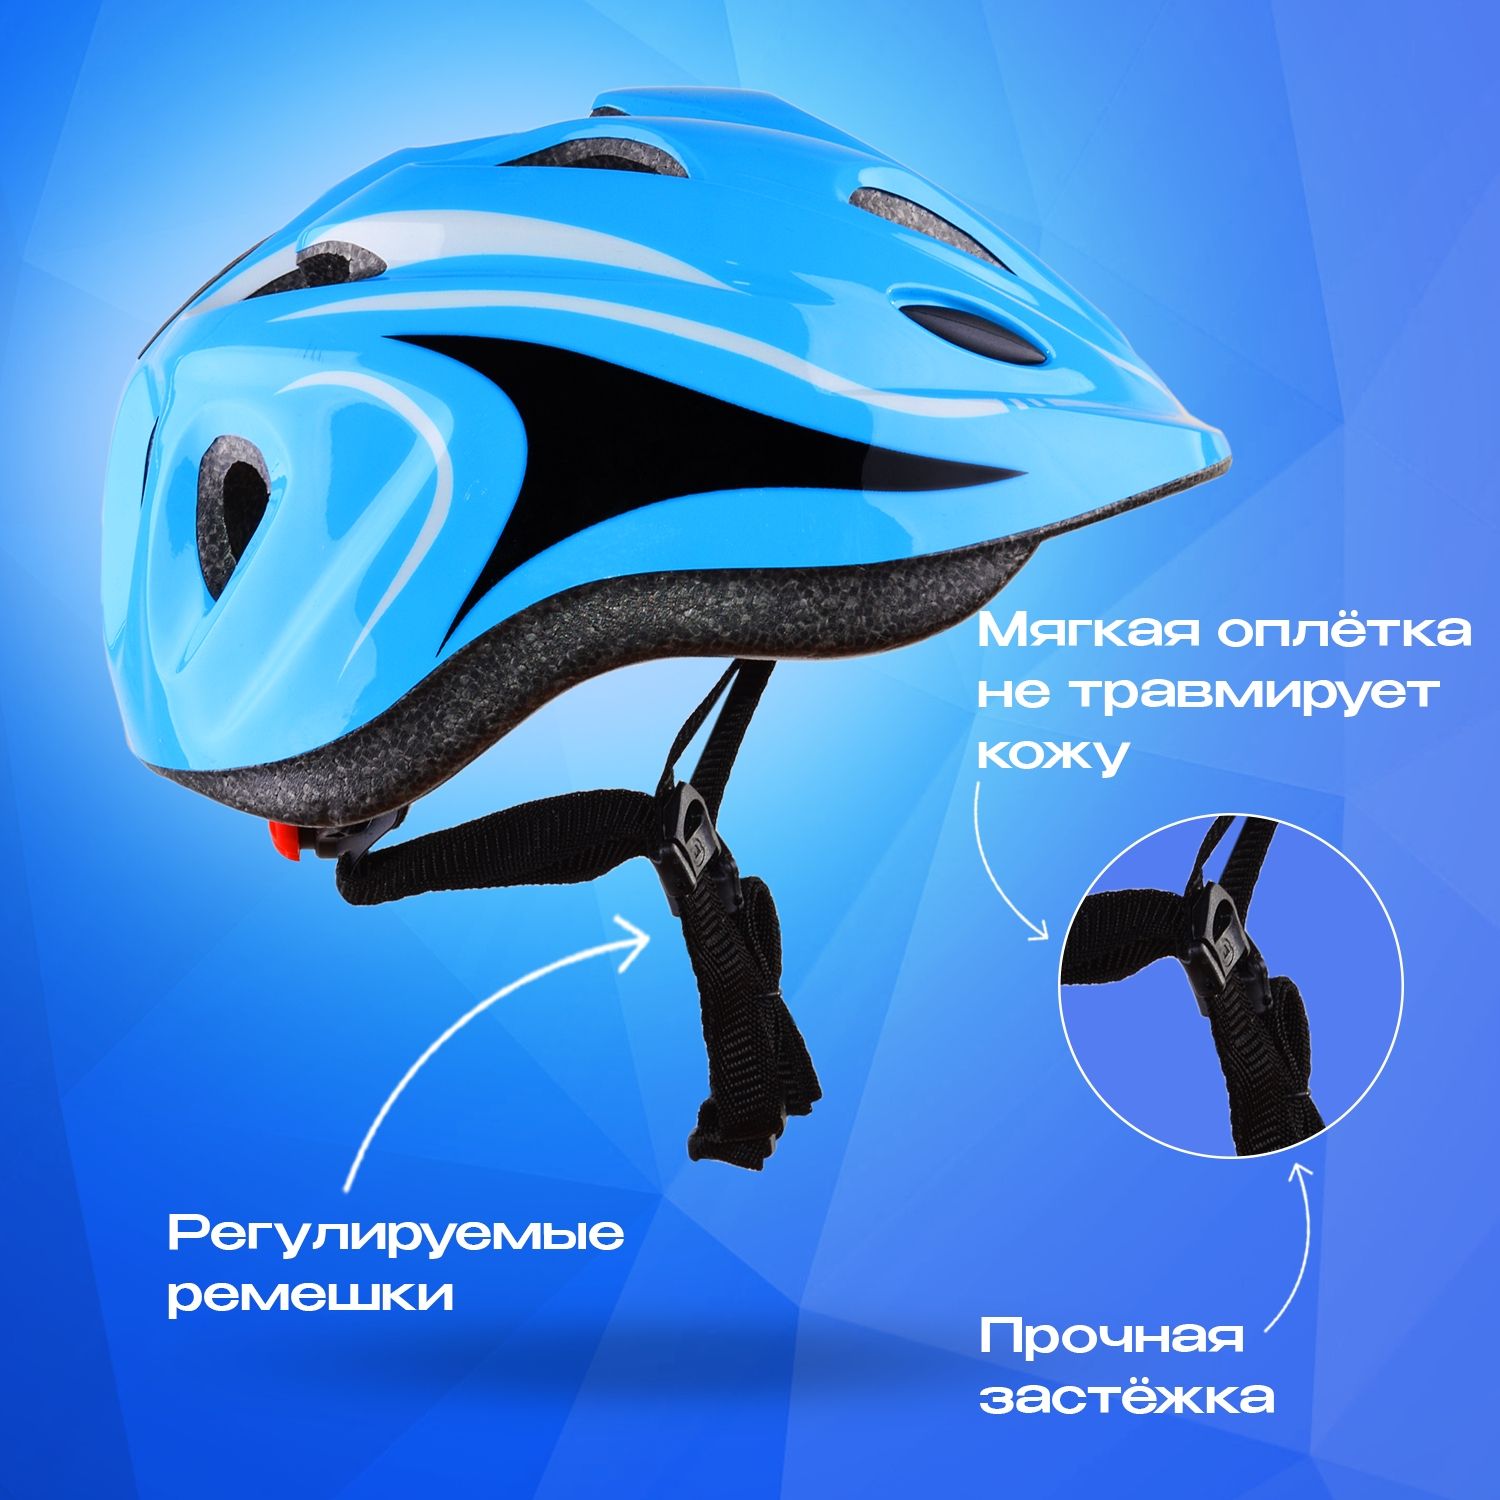 Шлем детский RGX AC-WX-A13 Blue с руглировкой размера 50 - 57 см - фото 3